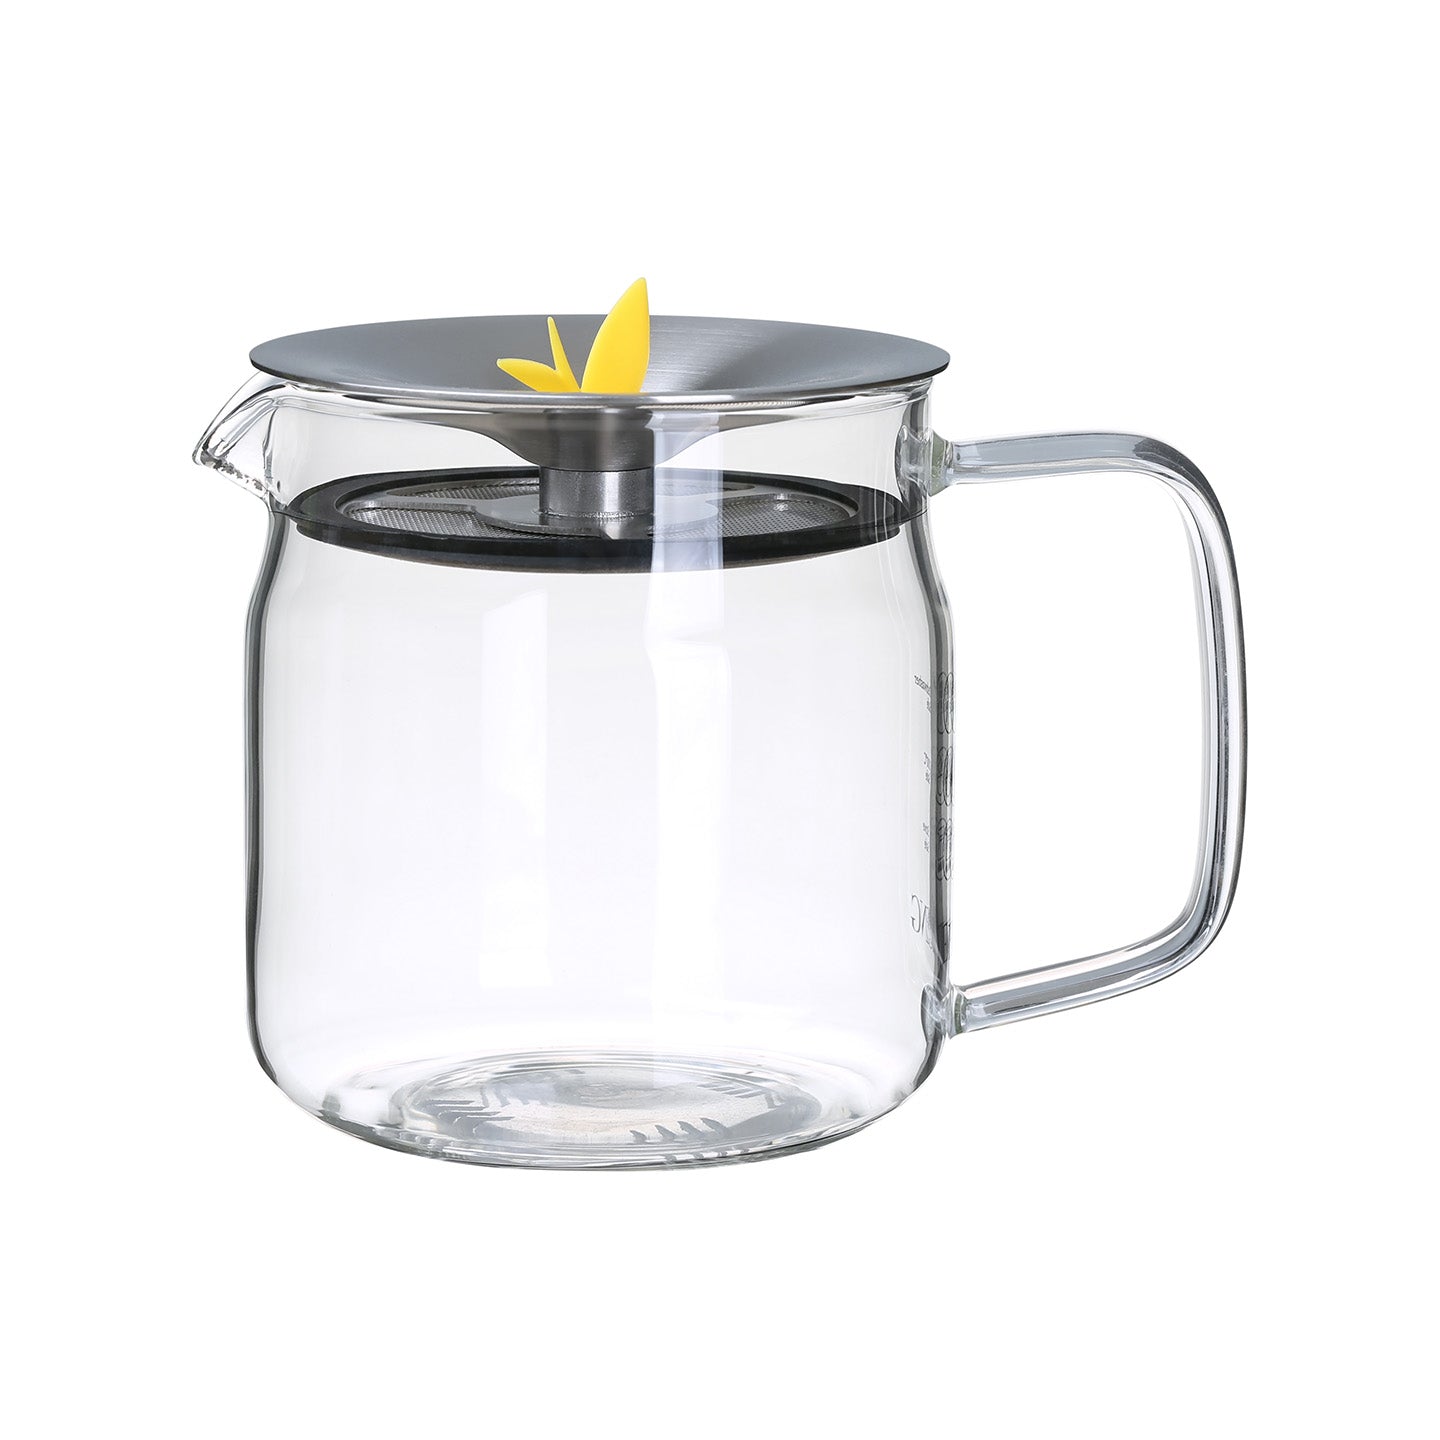 https://www.eilong.com/cdn/shop/products/clear-glass-teapot-waterfall-filter-500ml.jpg?v=1649923678